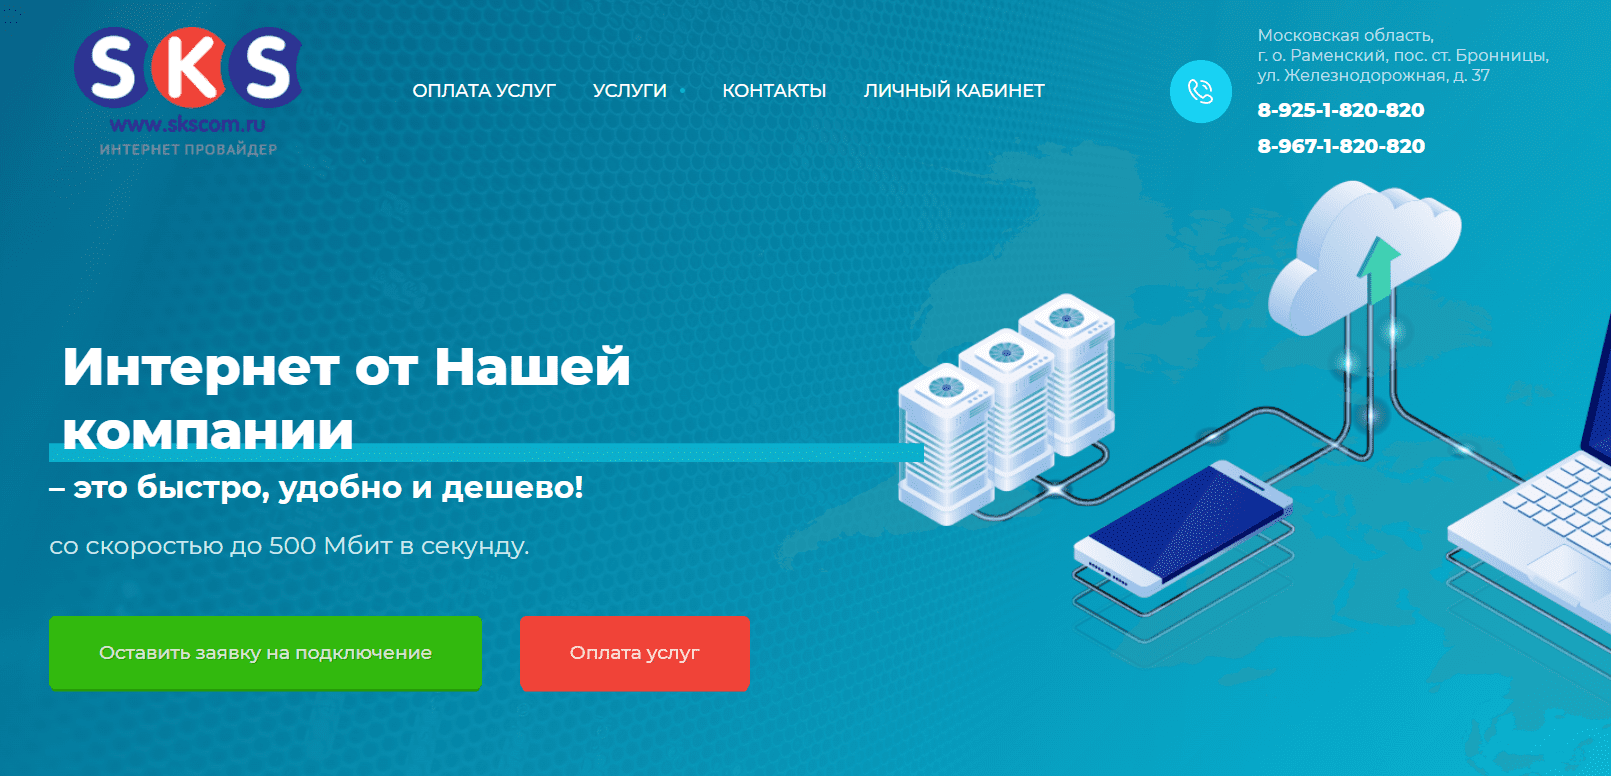 Интернет-провайдер СКС КОМ (skscom.ru)